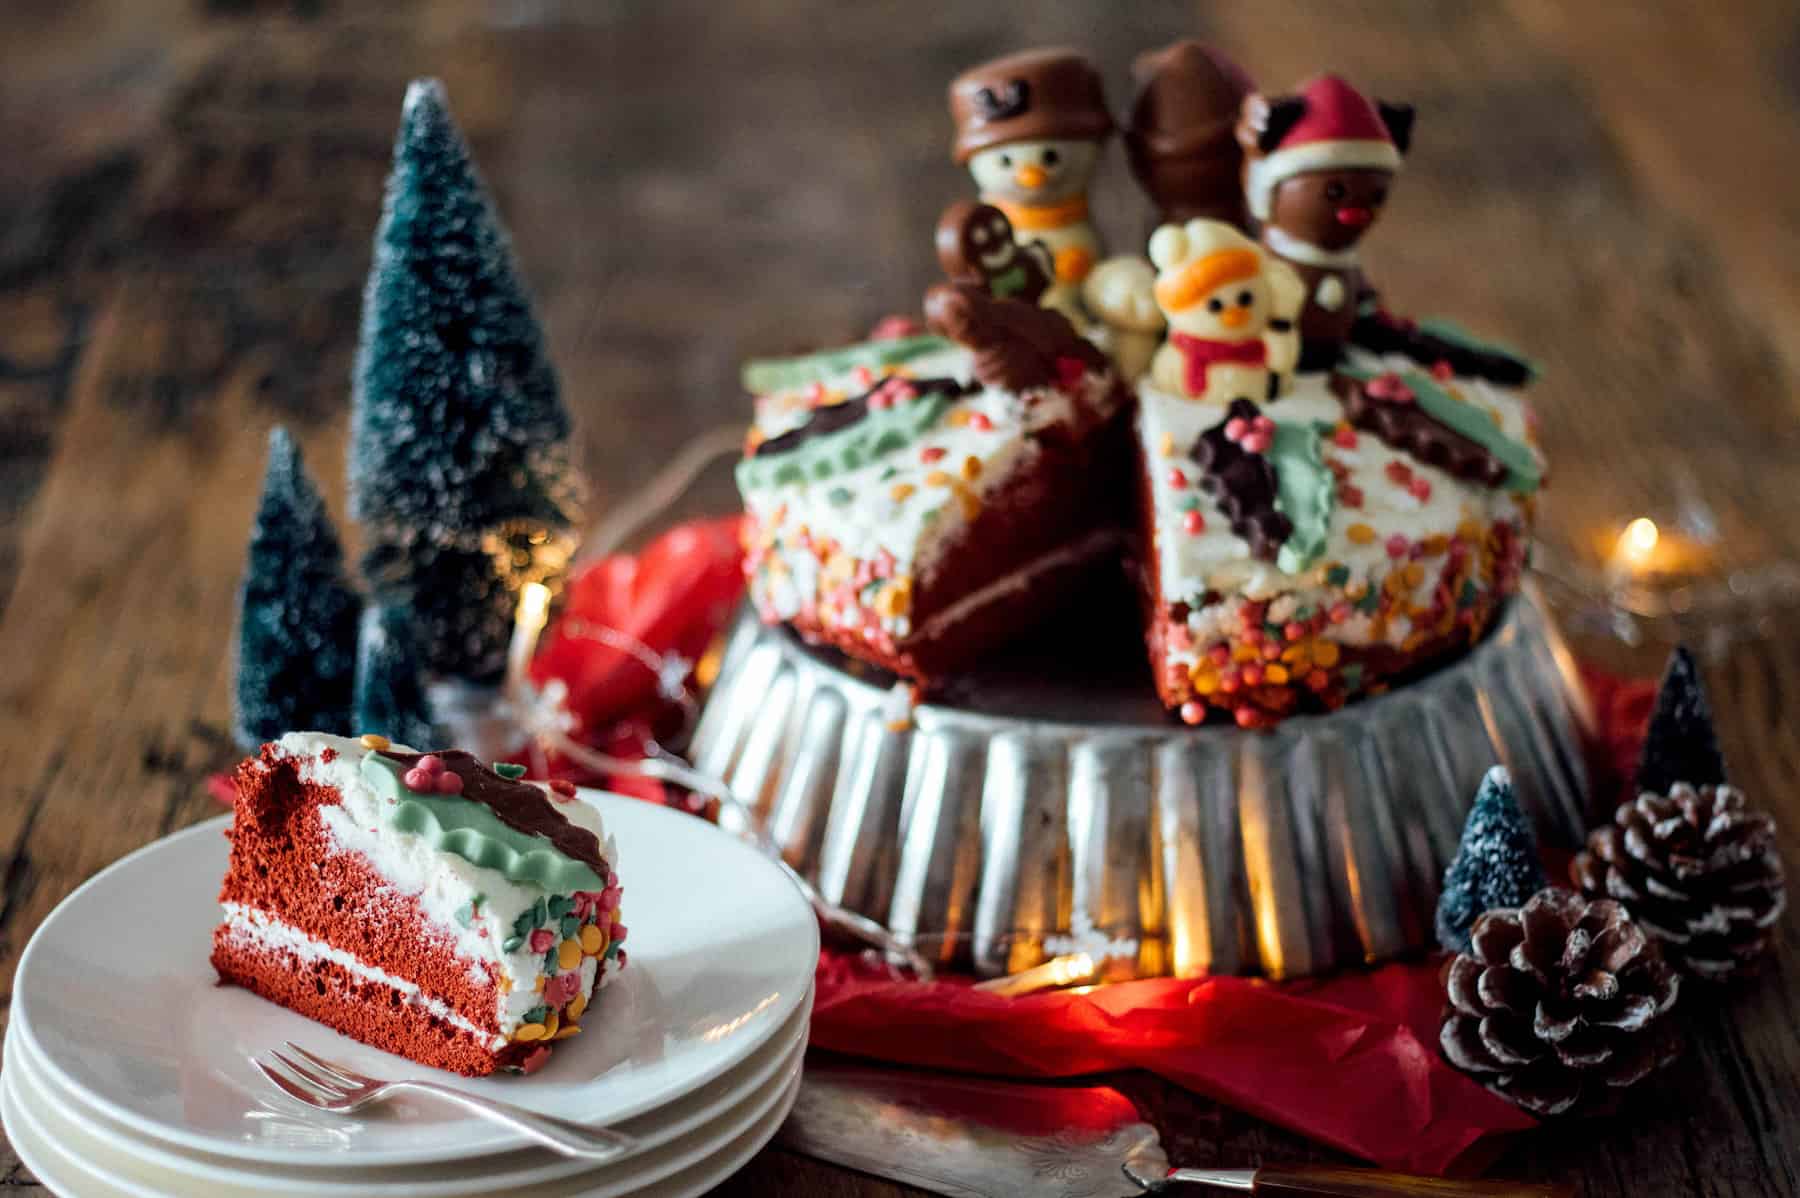 Vervallen Niet meer geldig Optimistisch Makkelijke Red Velvet kersttaart - Francesca Kookt